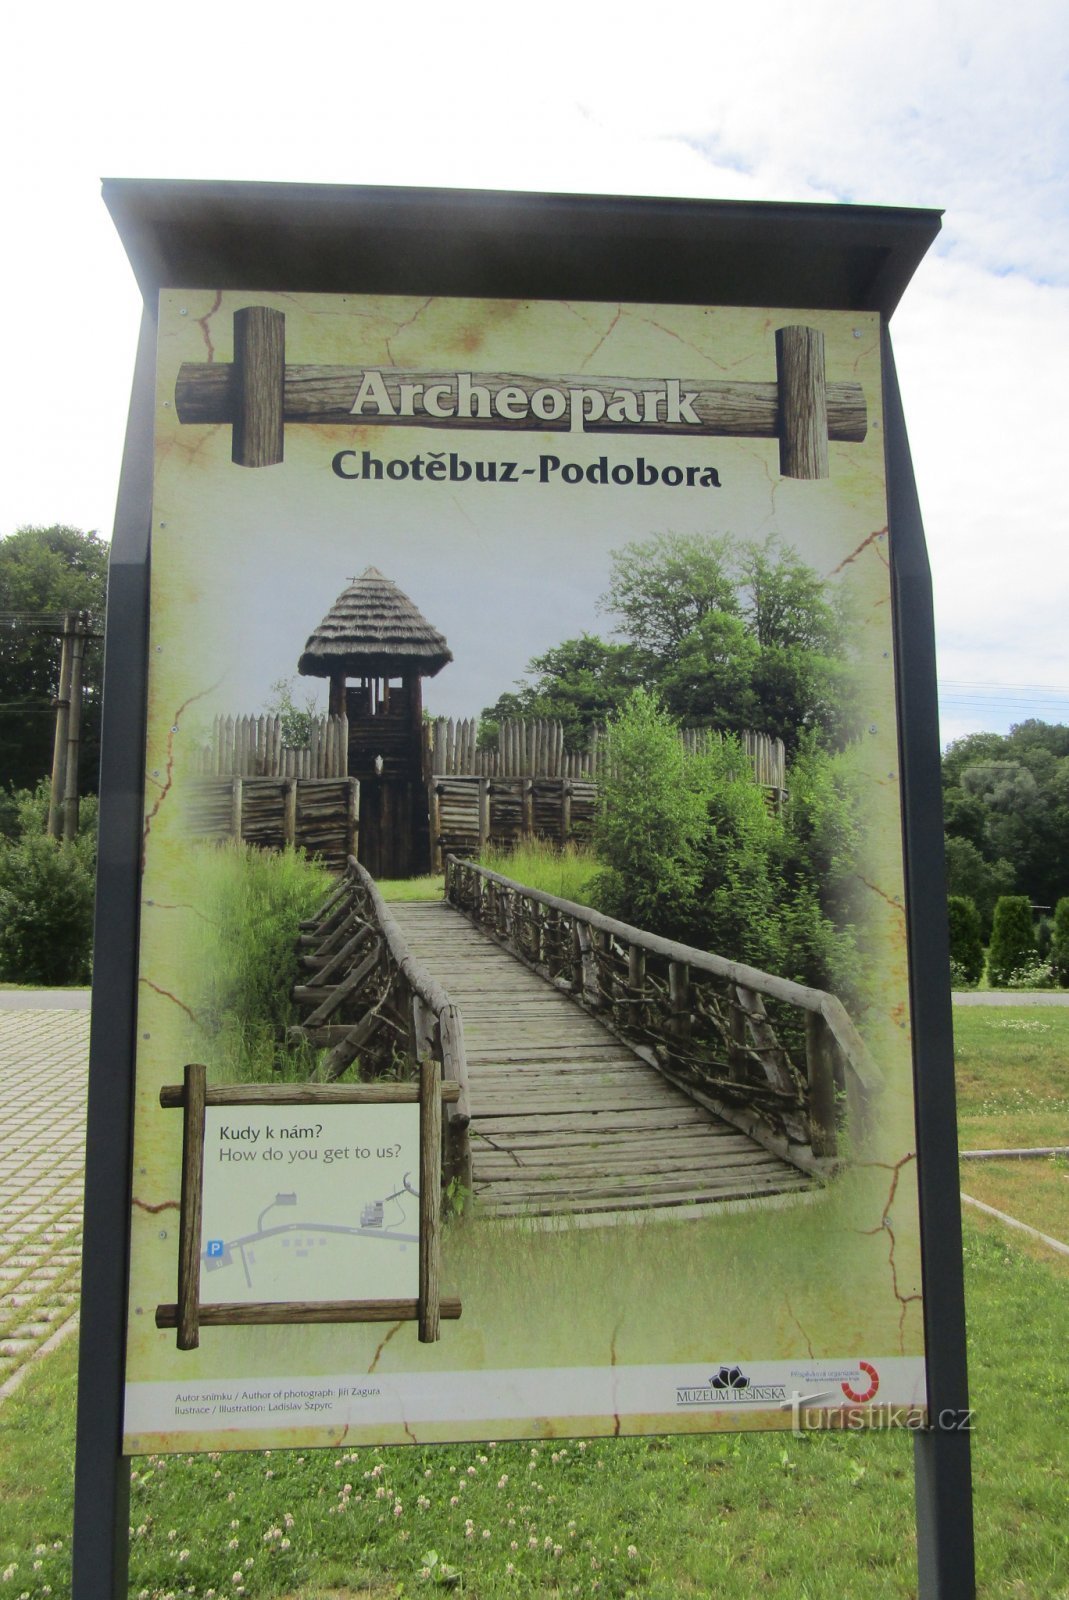 Archeopark in Chotěbuza-Podobor